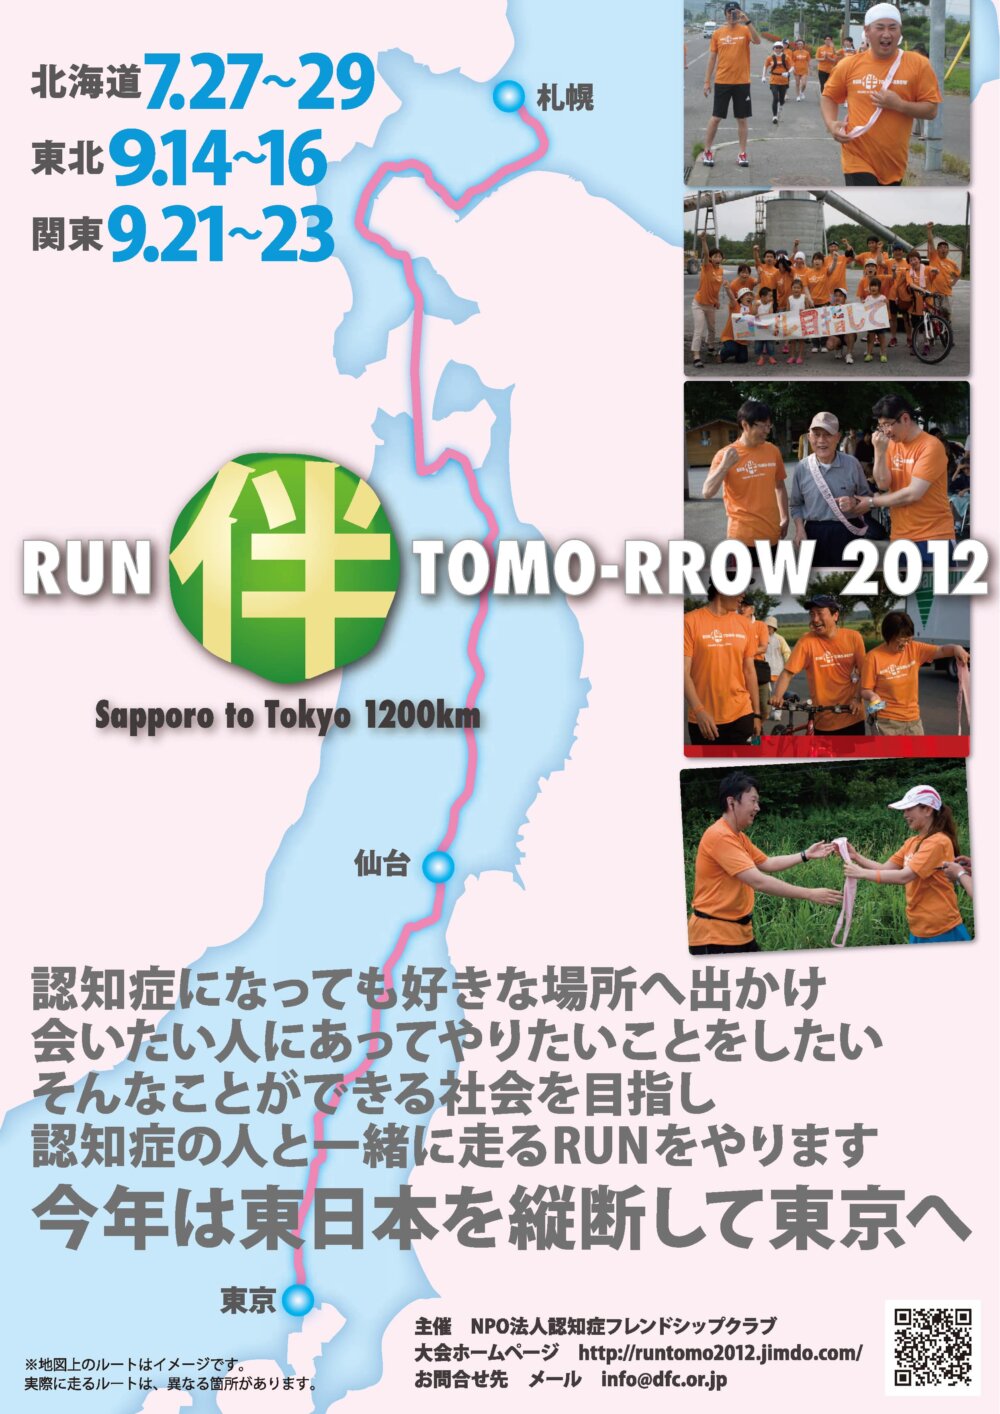 RUN TOMO-RROW 2012